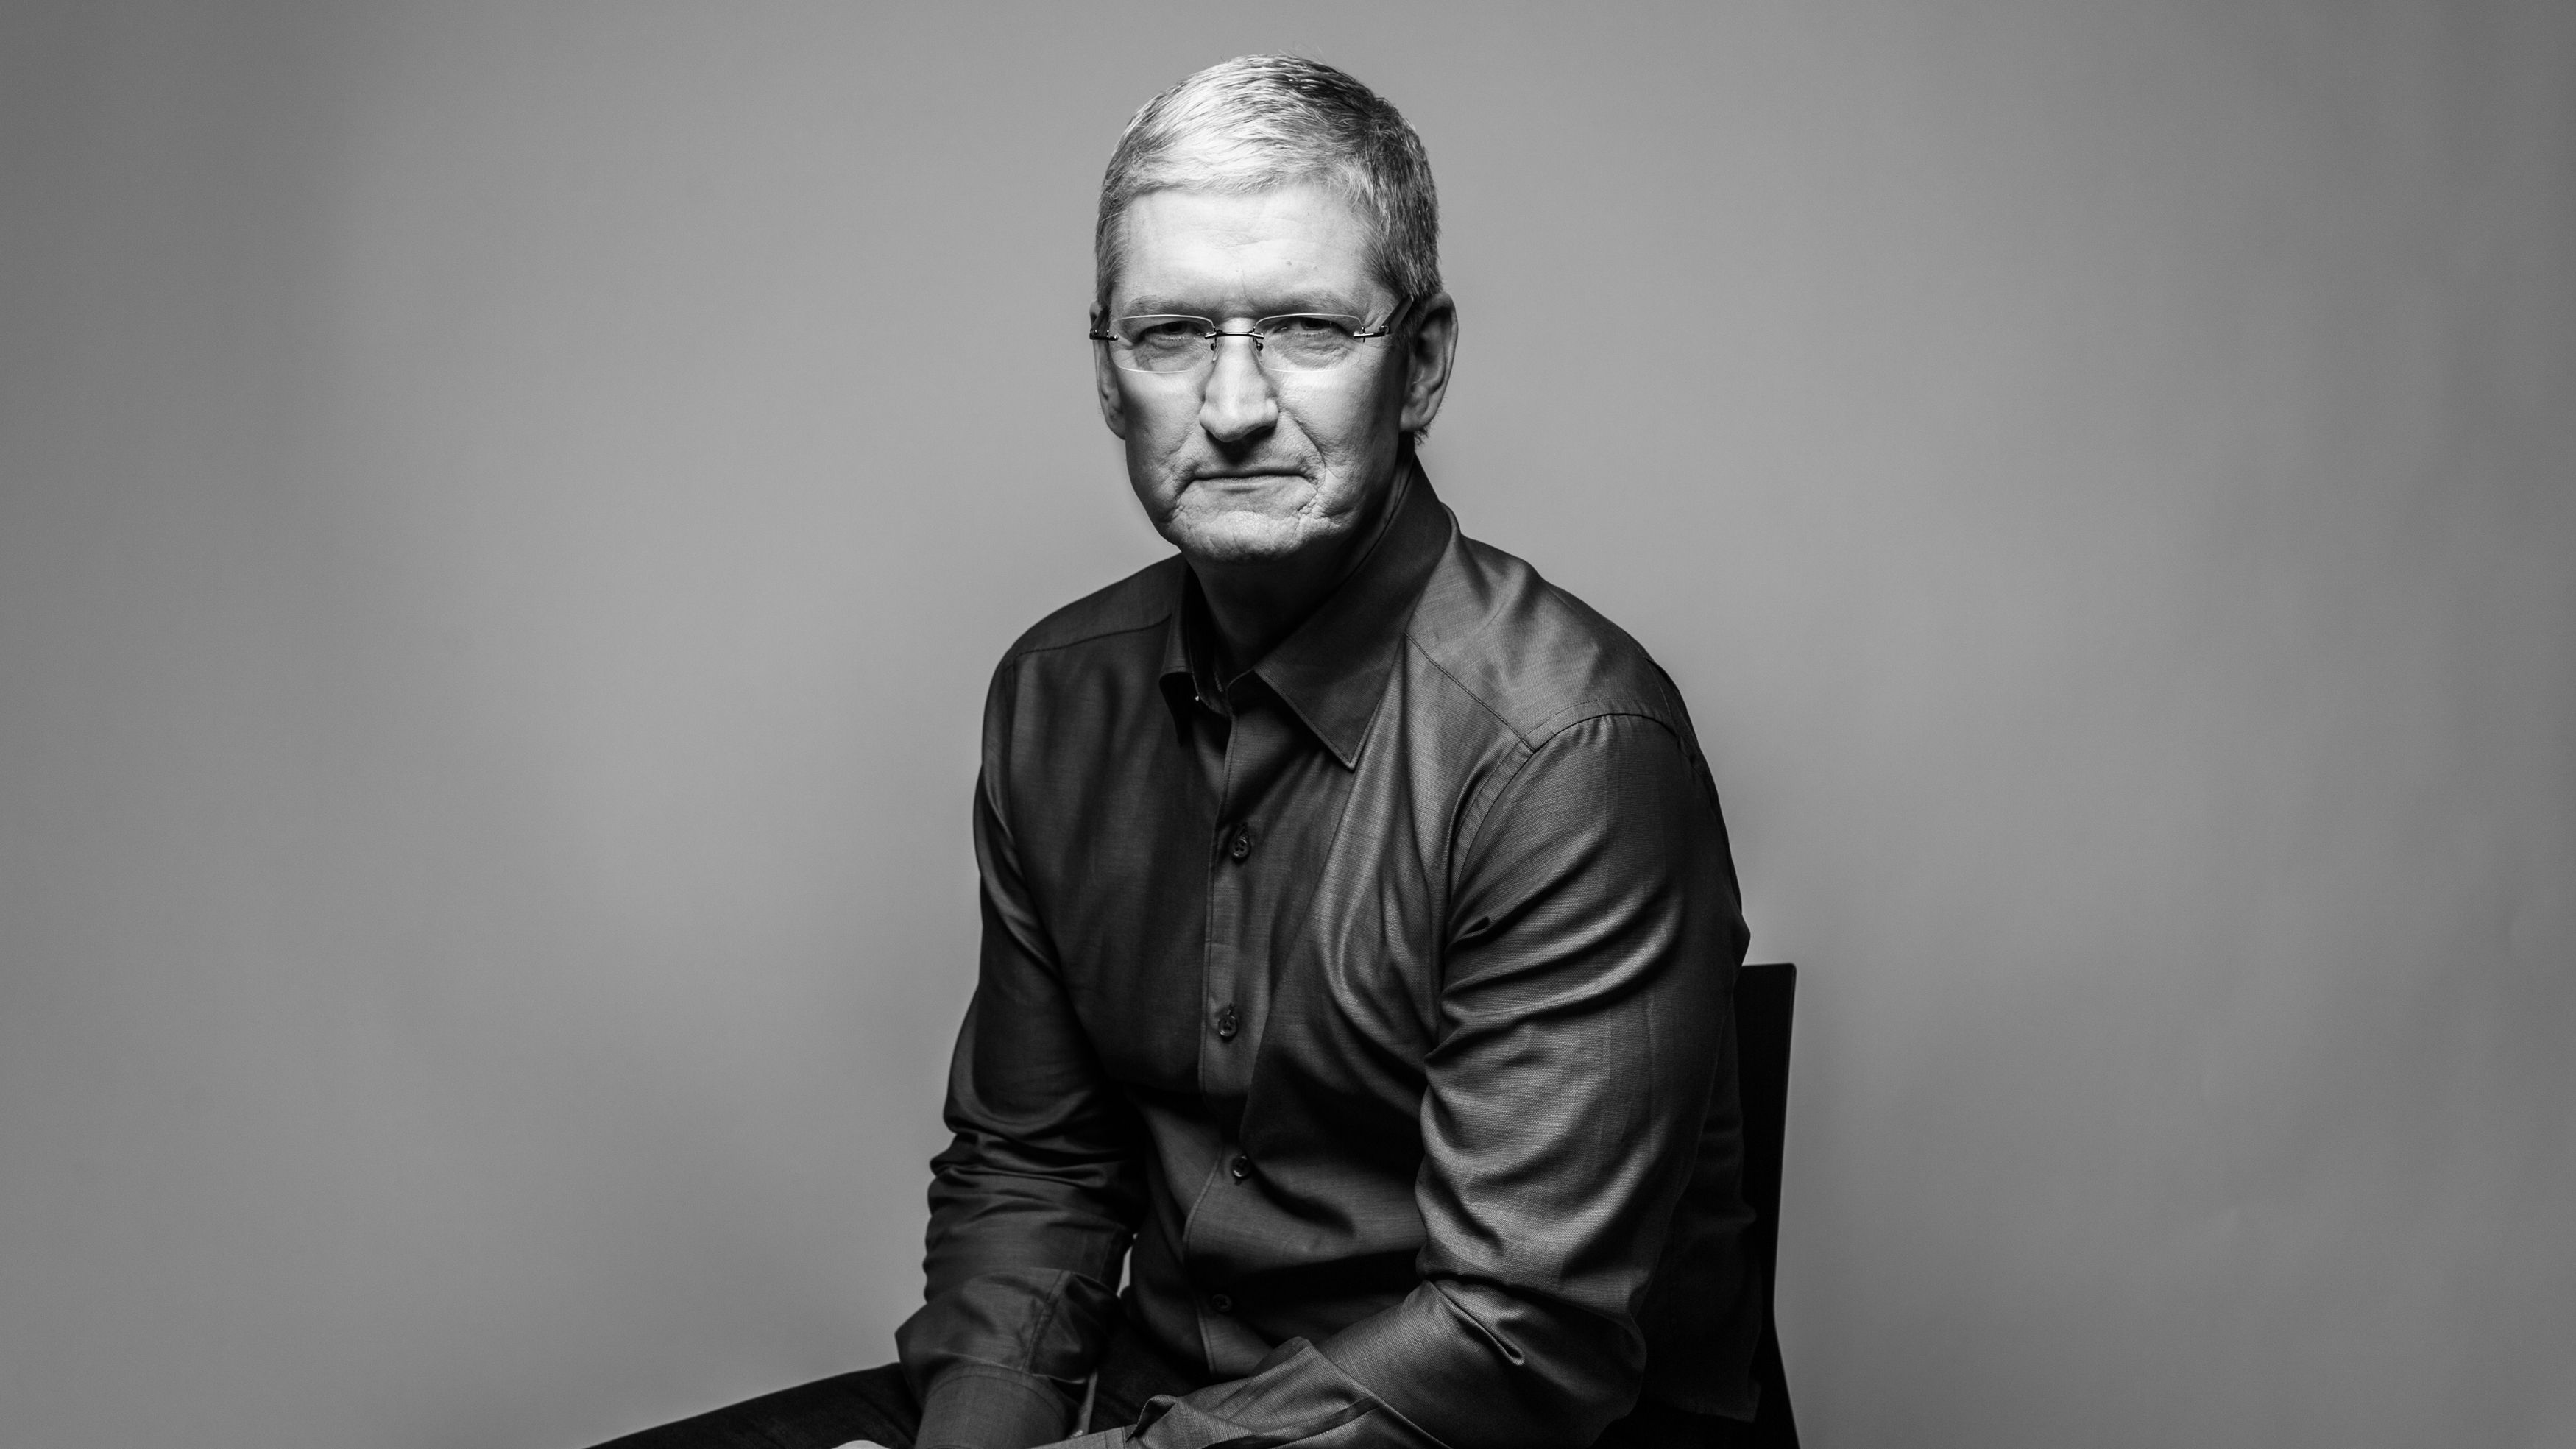 Tim Cook - Apple, Giáo dục & Sự nghiệp là một chủ đề hấp dẫn và sự kết hợp tuyệt vời giữa công nghệ và giáo dục. Điều này đem đến cho người xem không chỉ hiểu rõ hơn về Tim Cook mà còn về phương diện giáo dục và cơ hội sự nghiệp của Apple.